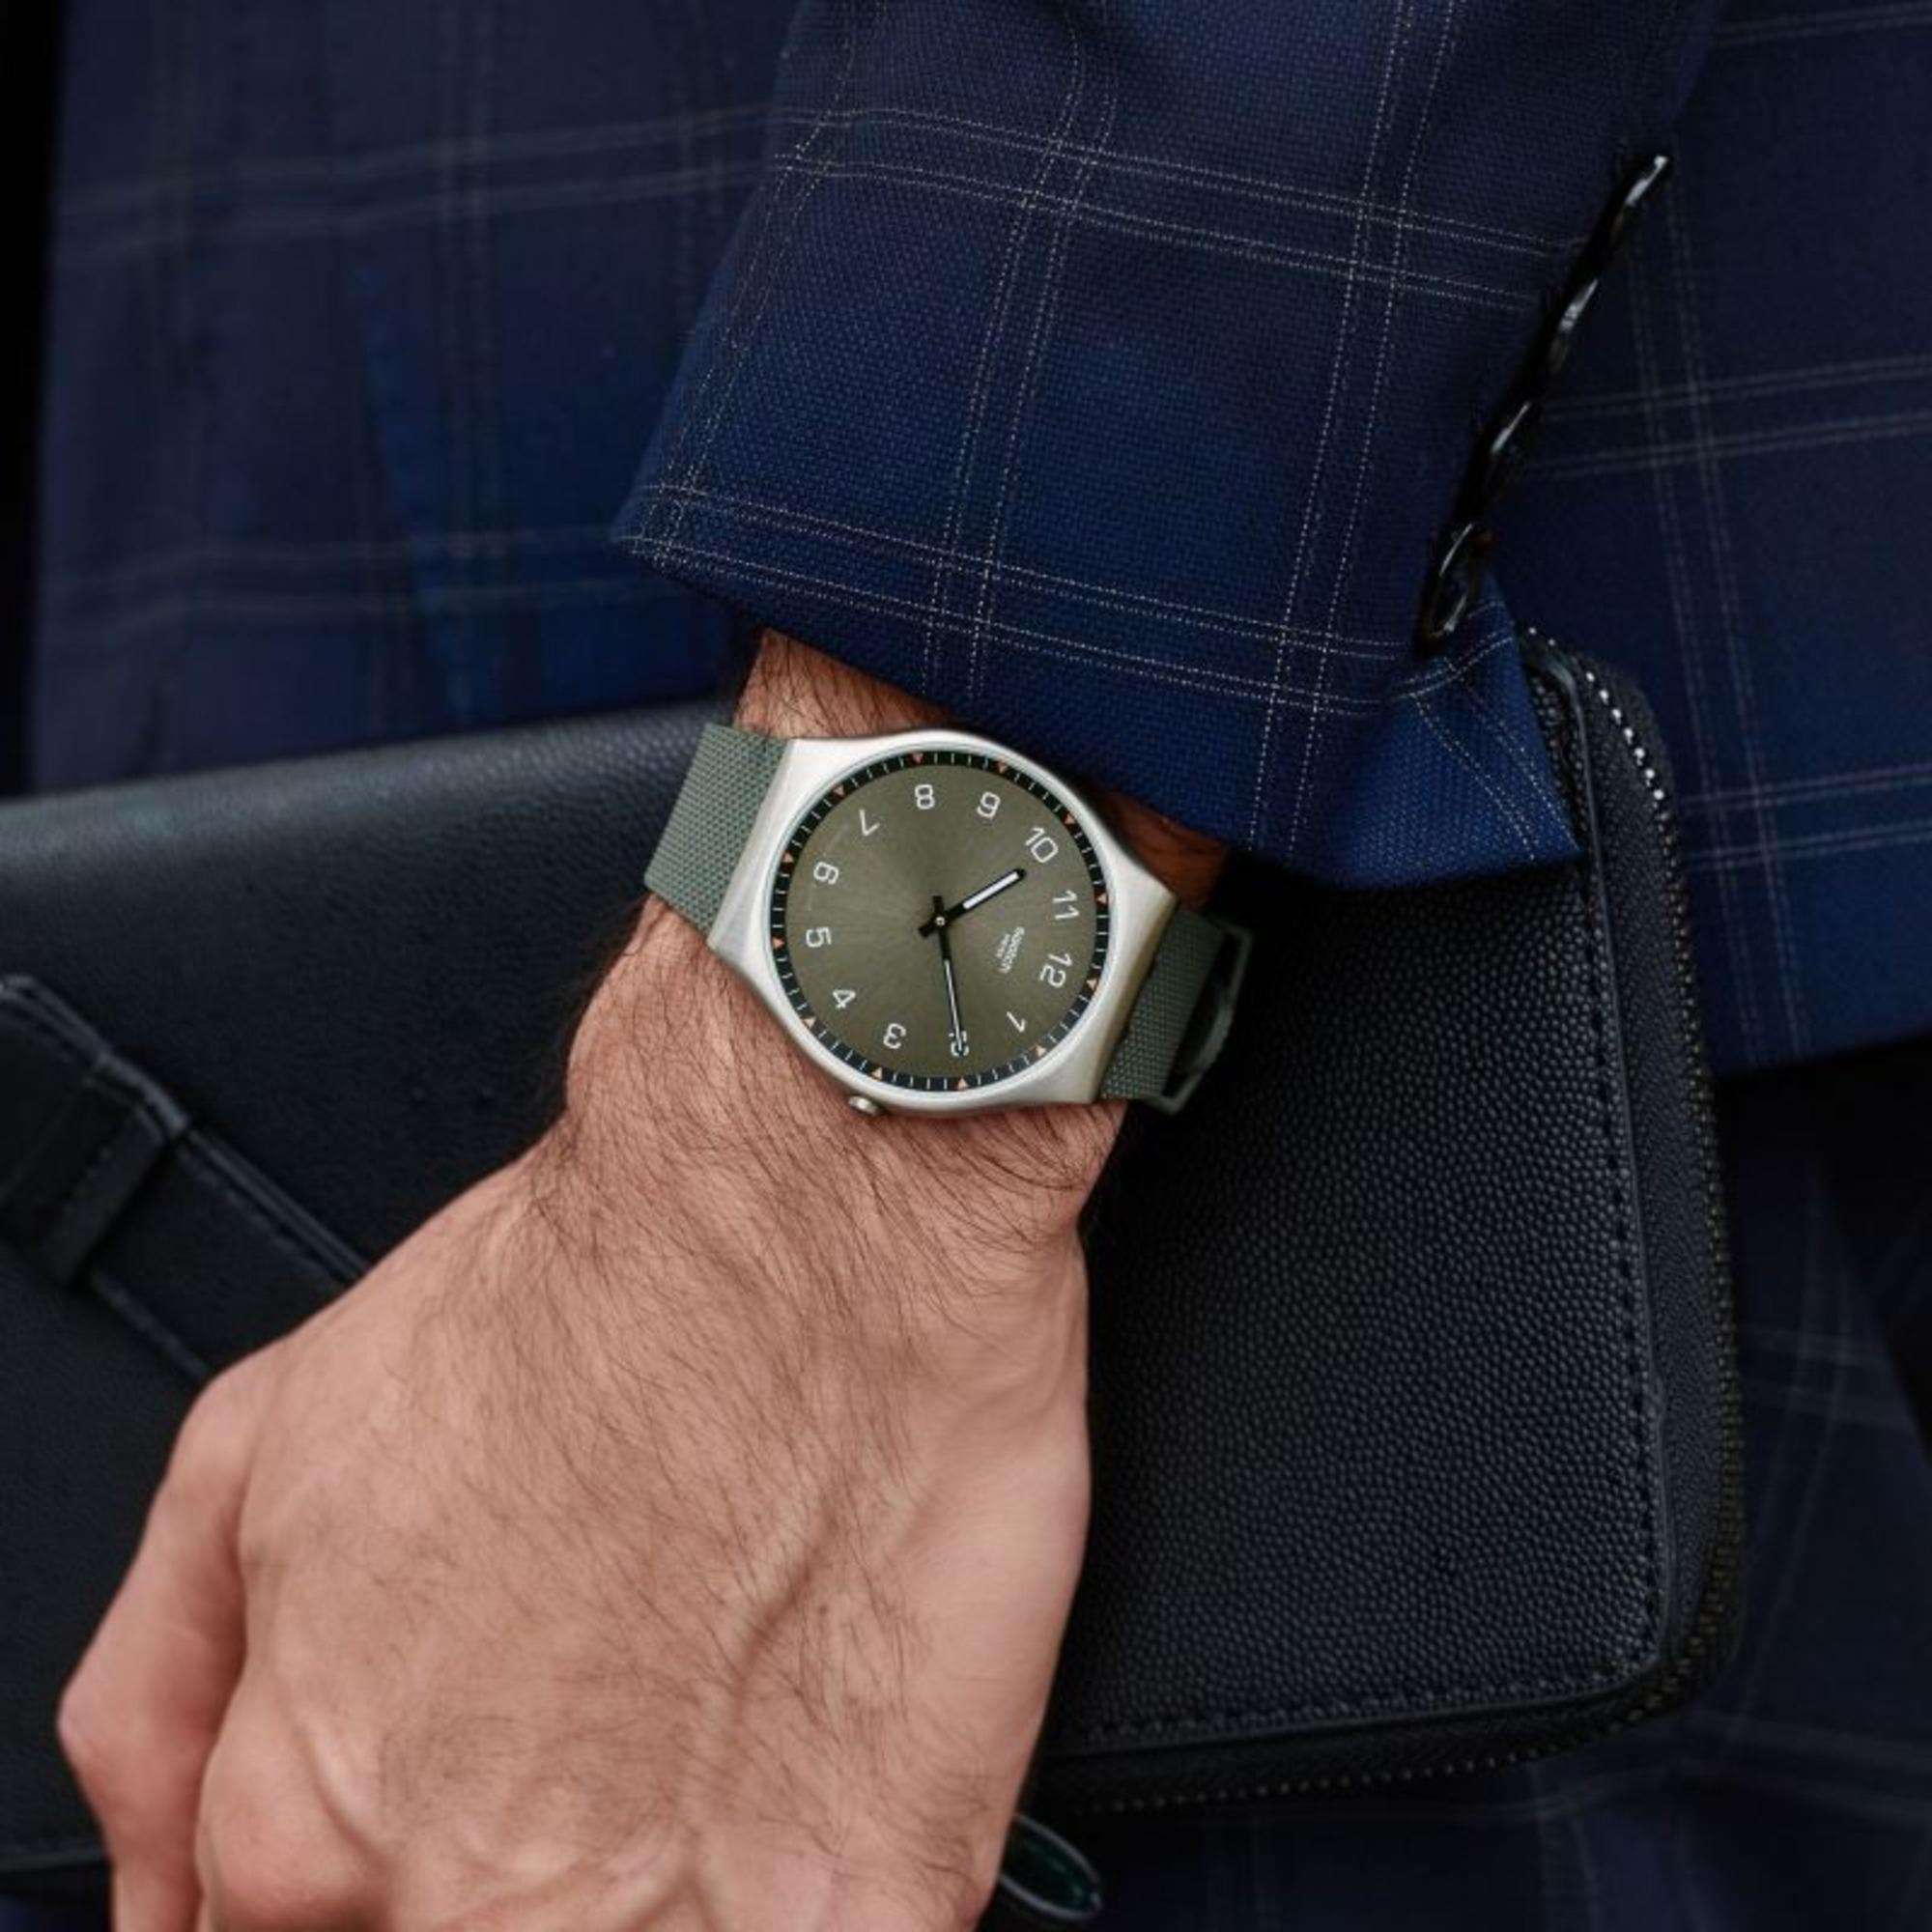 Reloj Hombre Fashion Análogo SS07S103 Gris Swatch - Compra Ahora